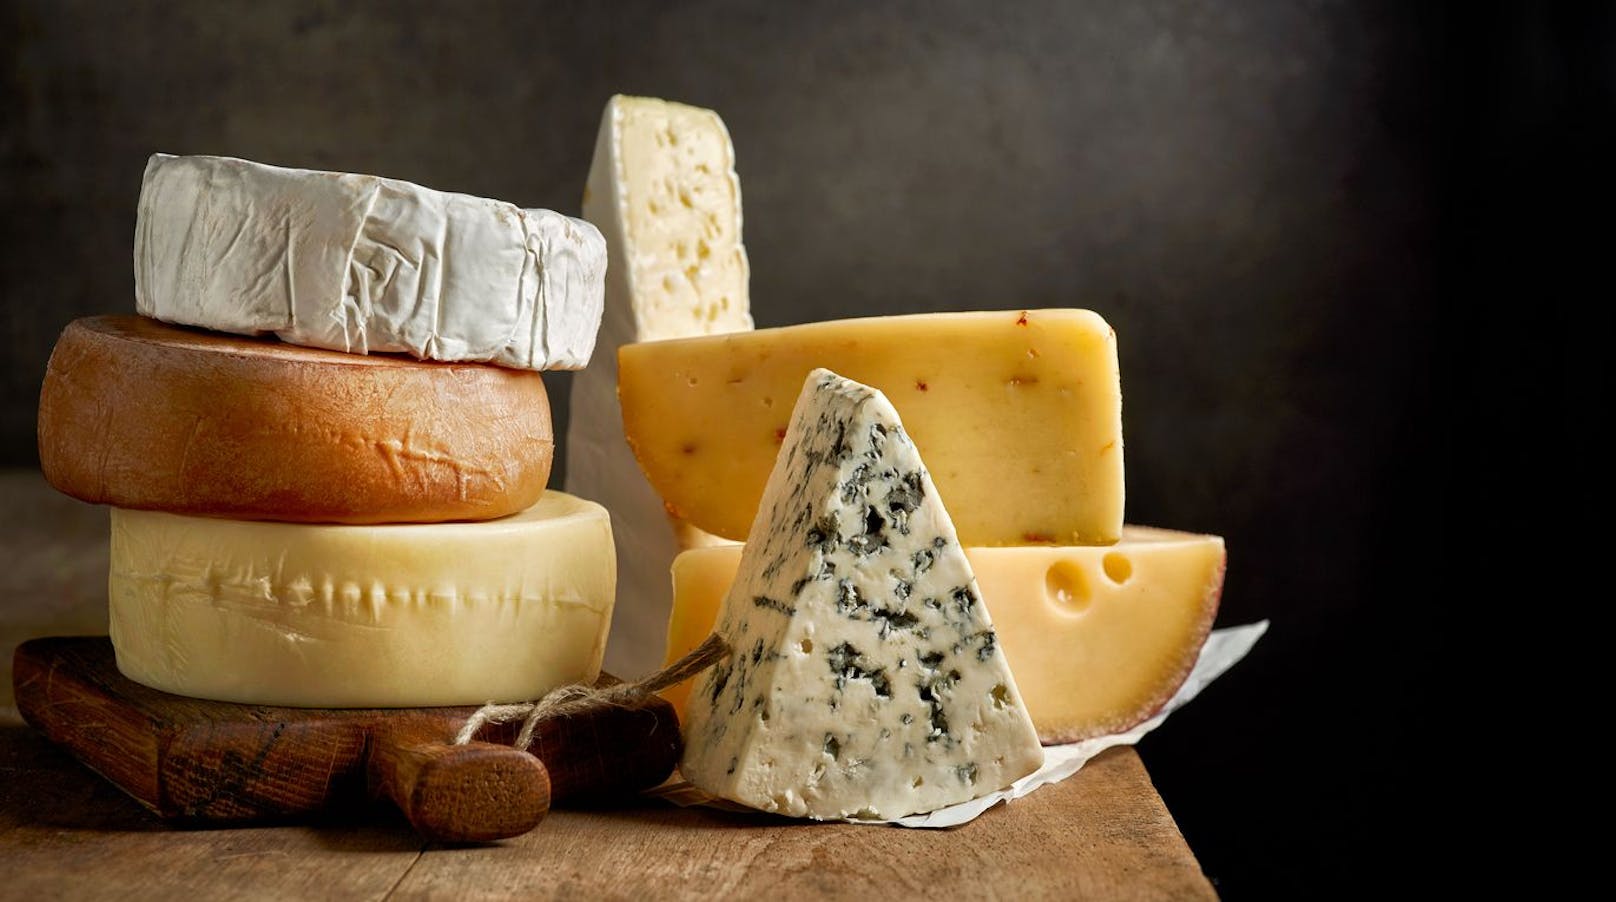 Gereifter Käse: Je länger der Käse gereift ist, desto mehr Histamin enthält er. Daher sind Brie oder Hartkäsesorten wie alter Gouda, Parmesan oder Emmentaler besonders histaminreich.